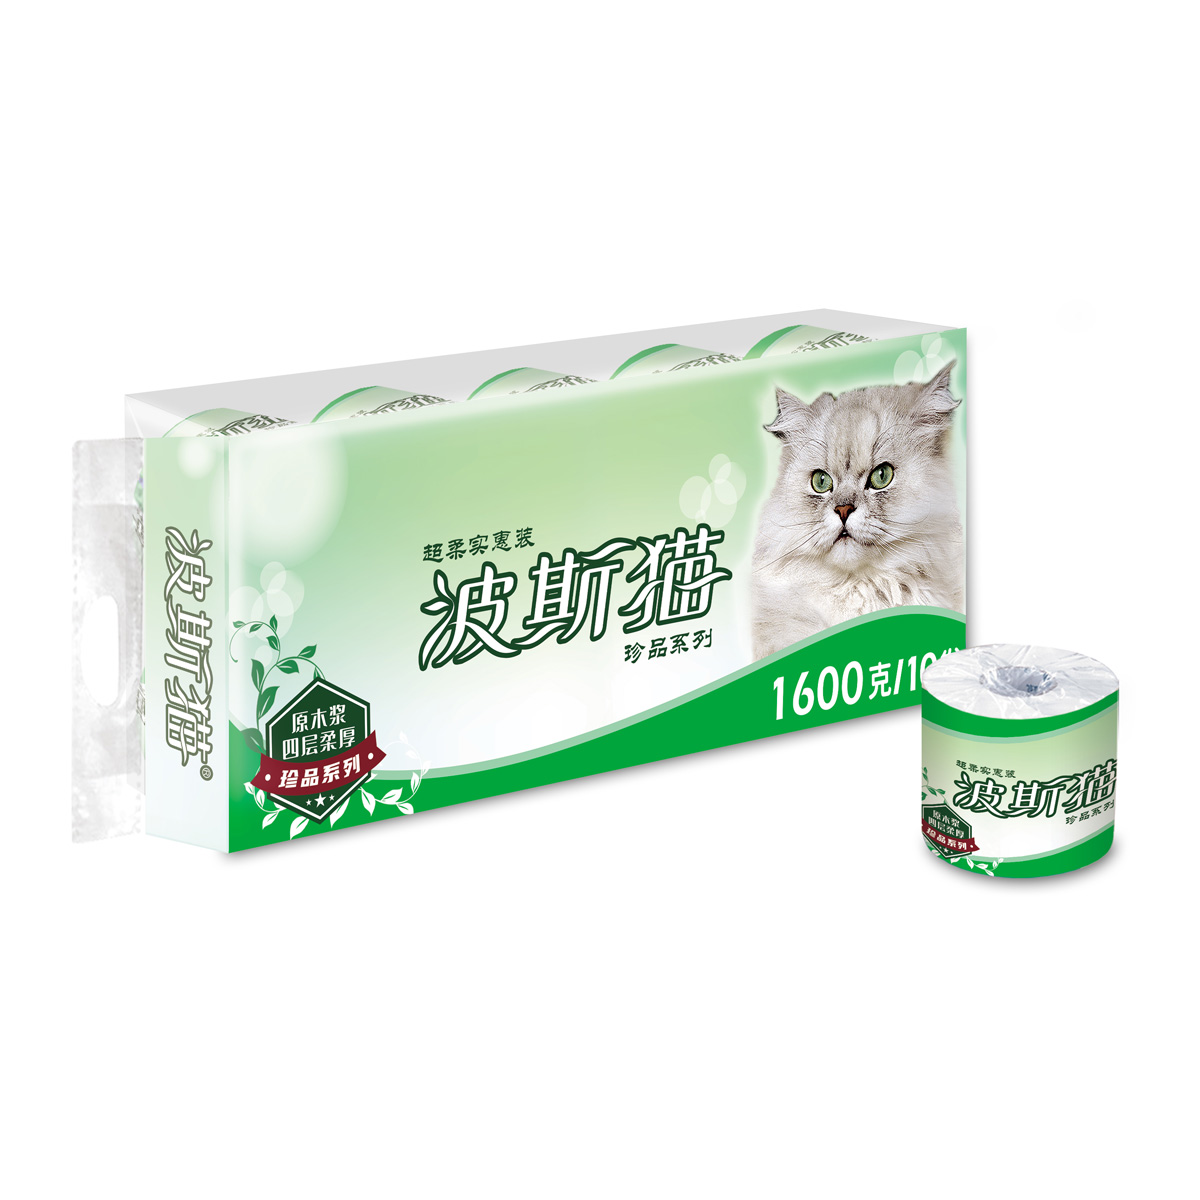 Persian cat treasures toilet paper roll 160g